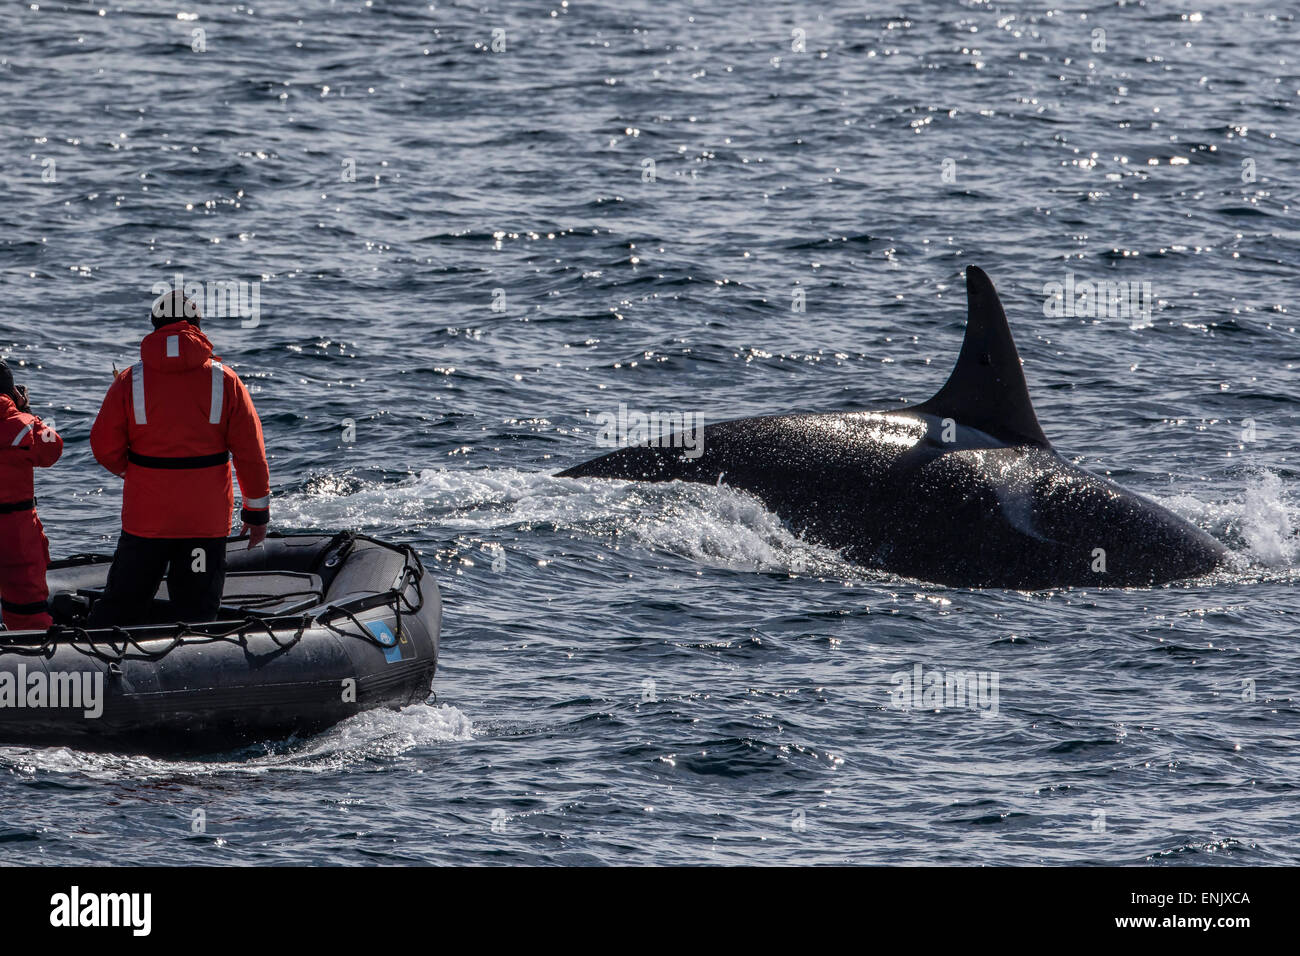 Type bull adultes un épaulard (Orcinus orca) surfacing près de chercheurs dans le détroit de Gerlache, l'Antarctique, régions polaires Banque D'Images